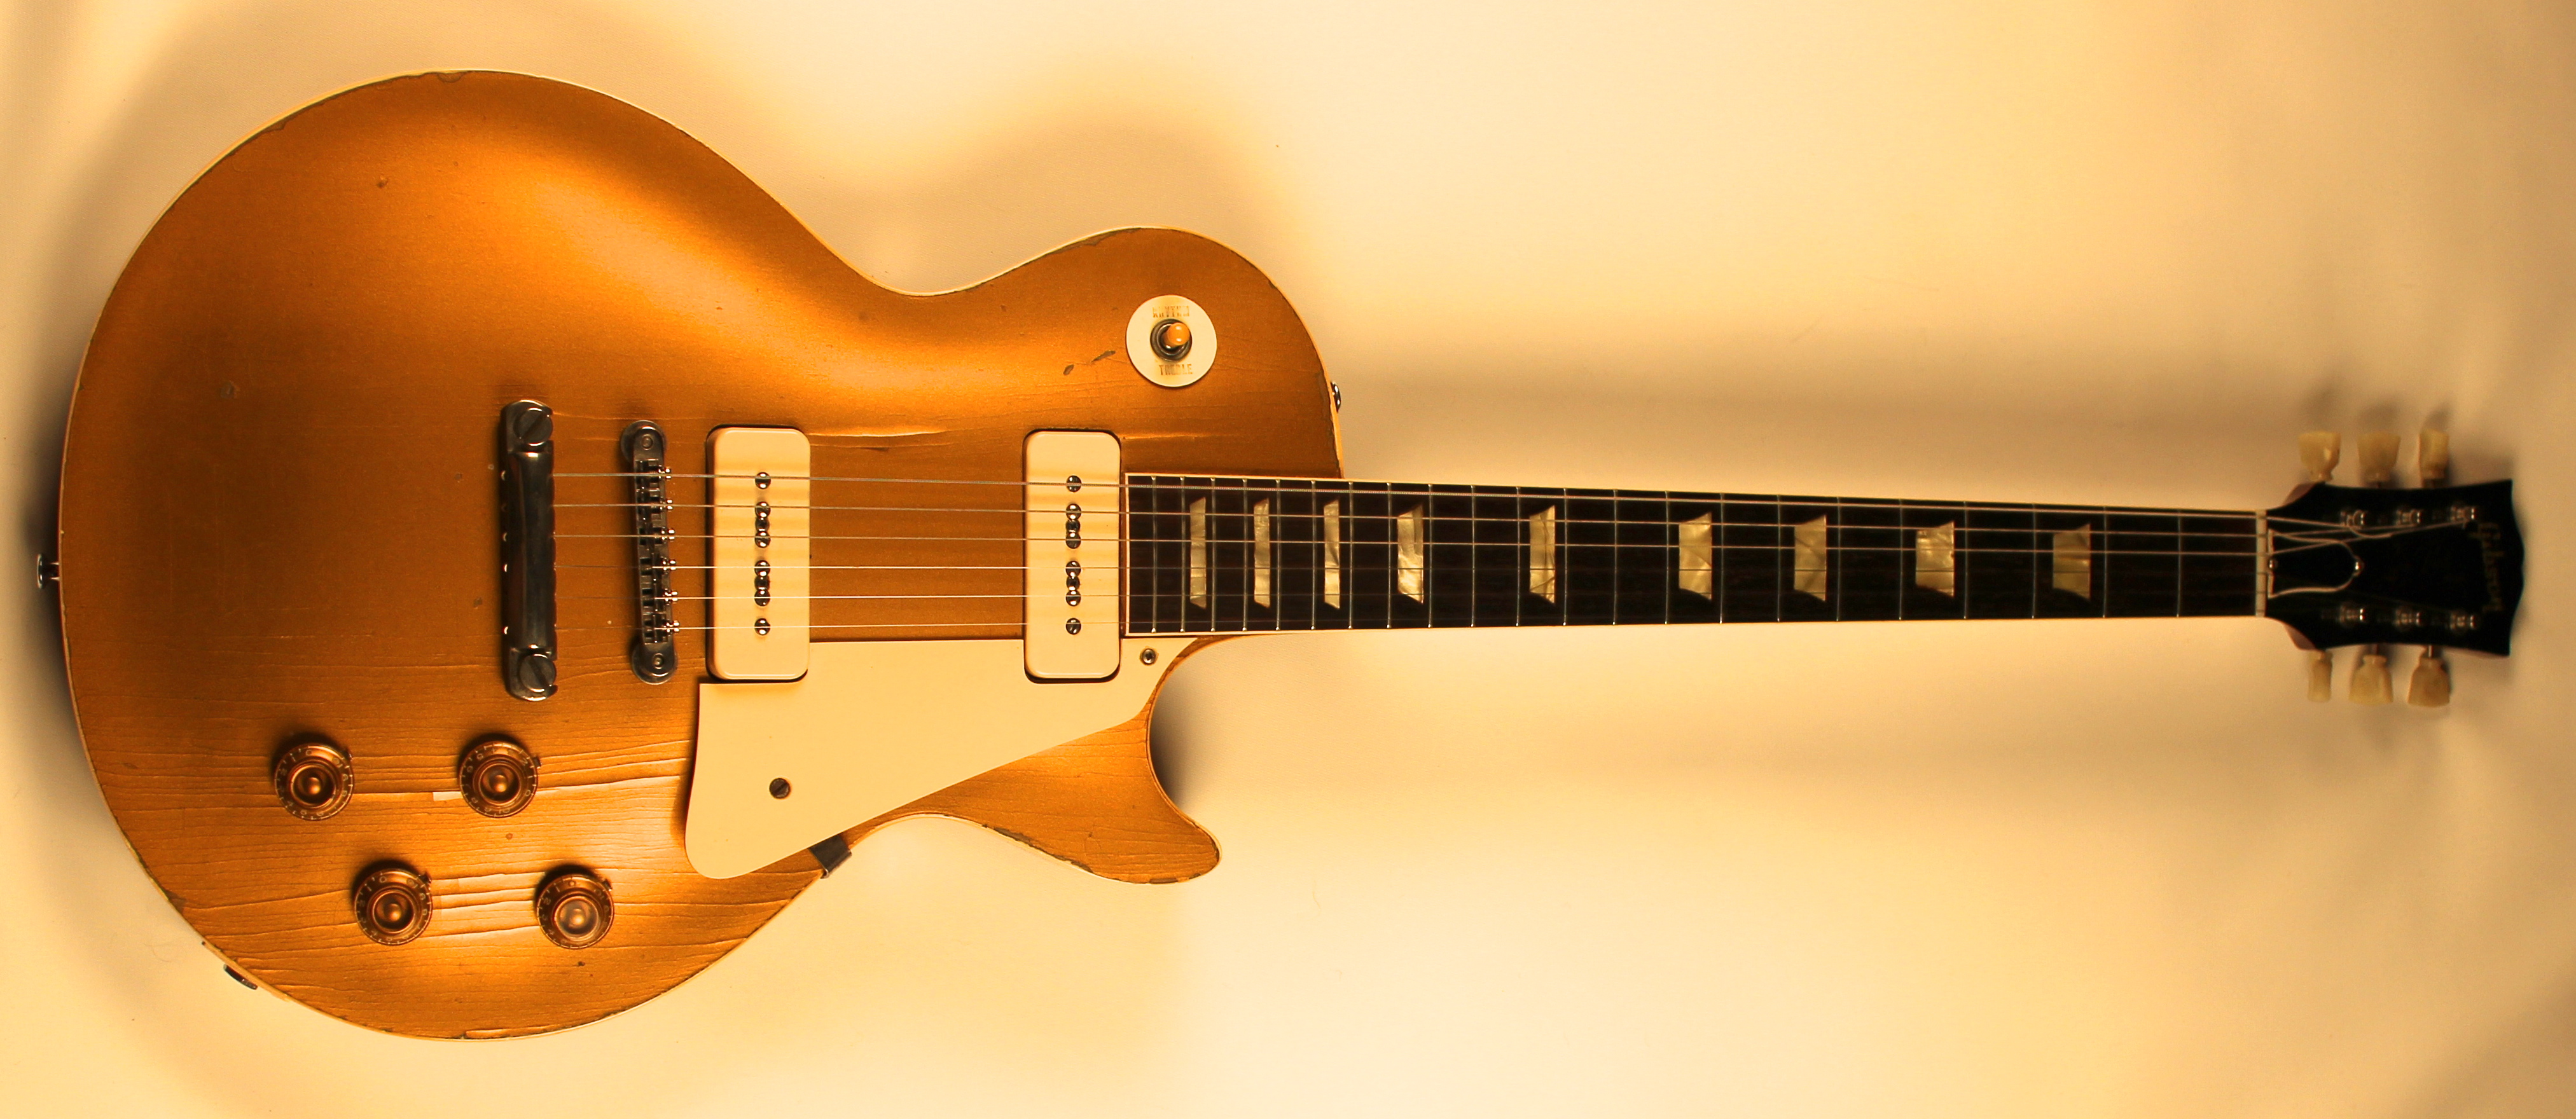 Gibson Les Paul Gold Top 2008 - $ 35,000.00 en Mercado Libre